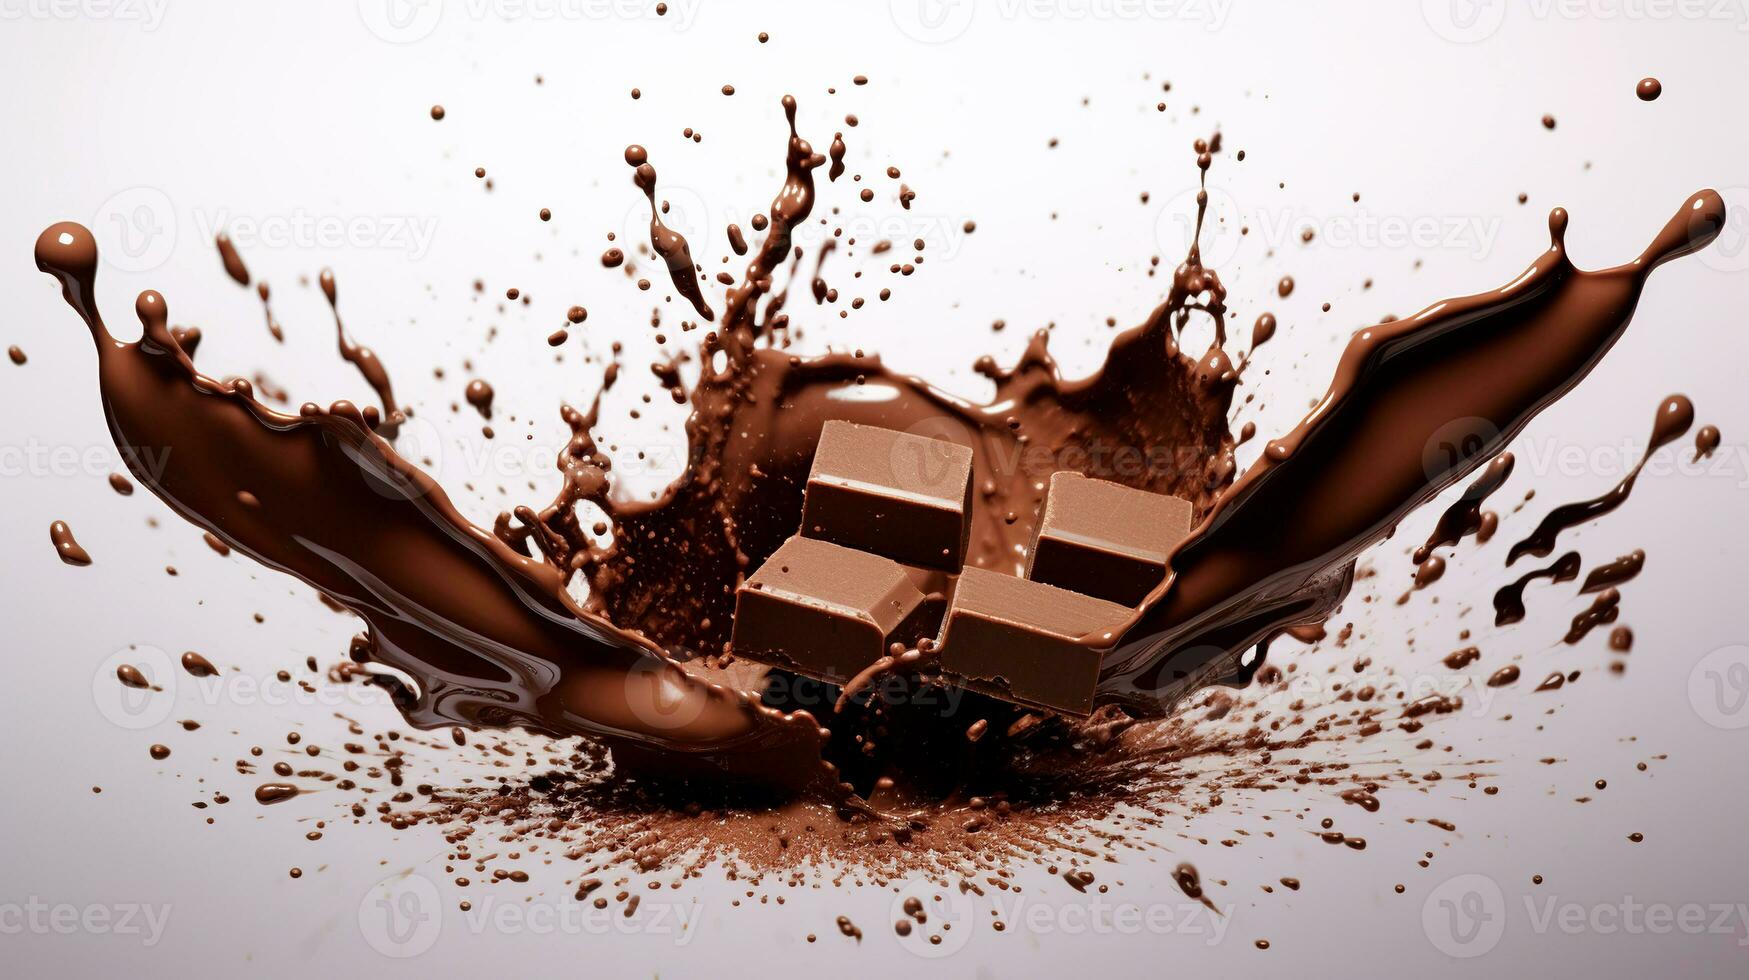 Schokolade Hintergrund. Schokolade Bar im heiß Schokolade. spritzt auf ein Weiß Hintergrund. foto